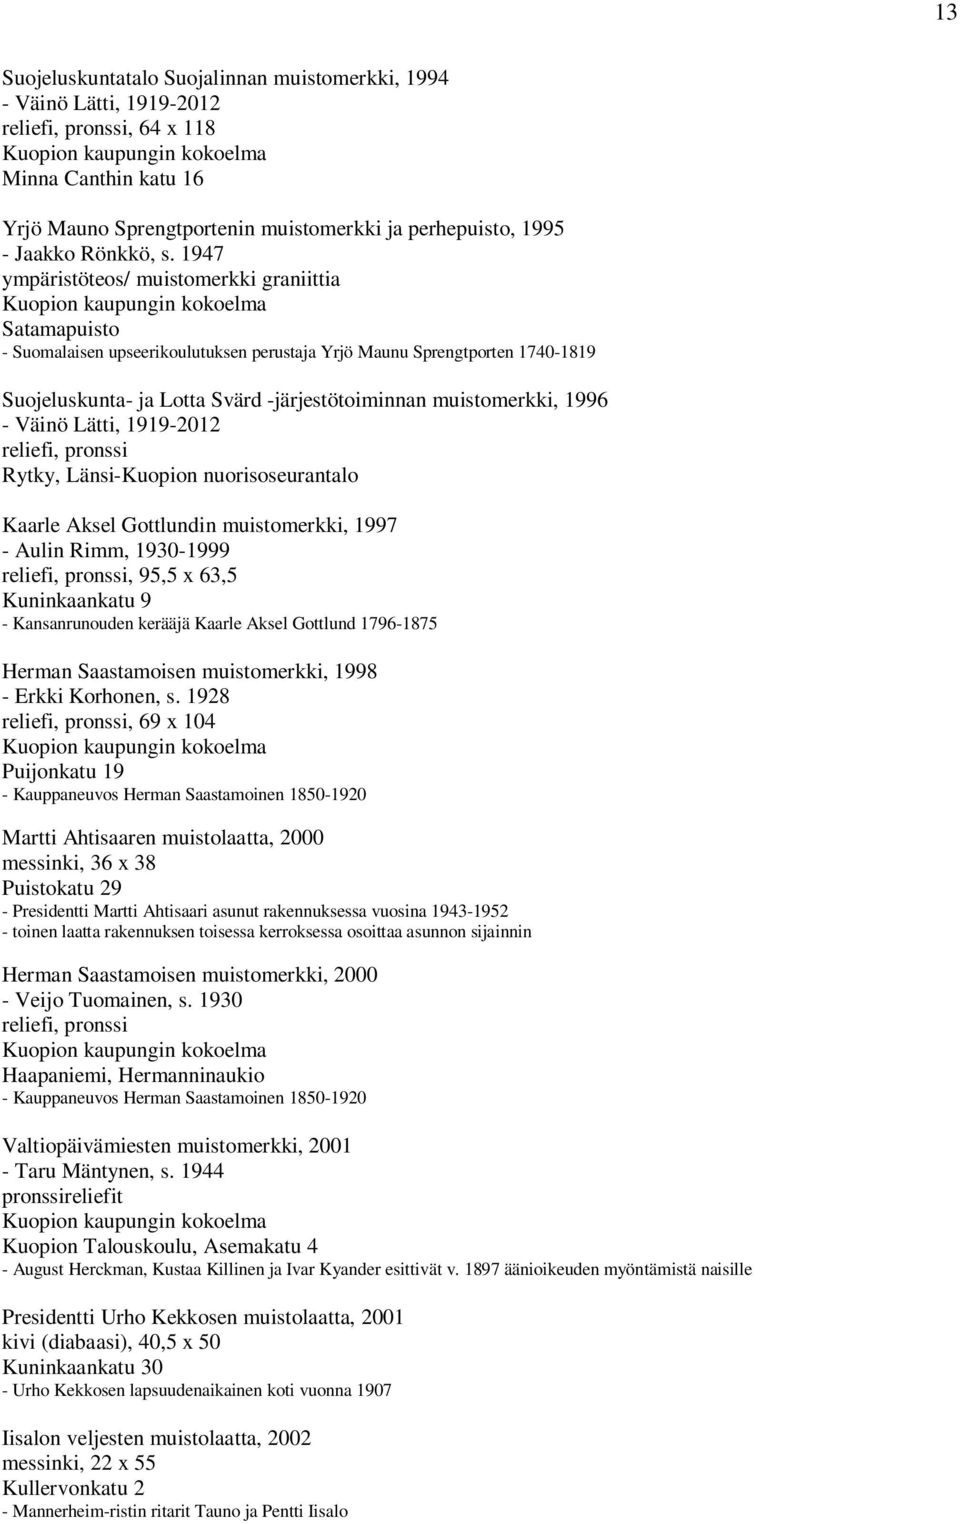 1996 reliefi, pronssi Rytky, Länsi-Kuopion nuorisoseurantalo Kaarle Aksel Gottlundin muistomerkki, 1997 - Aulin Rimm, 1930-1999 reliefi, pronssi, 95,5 x 63,5 Kuninkaankatu 9 - Kansanrunouden kerääjä